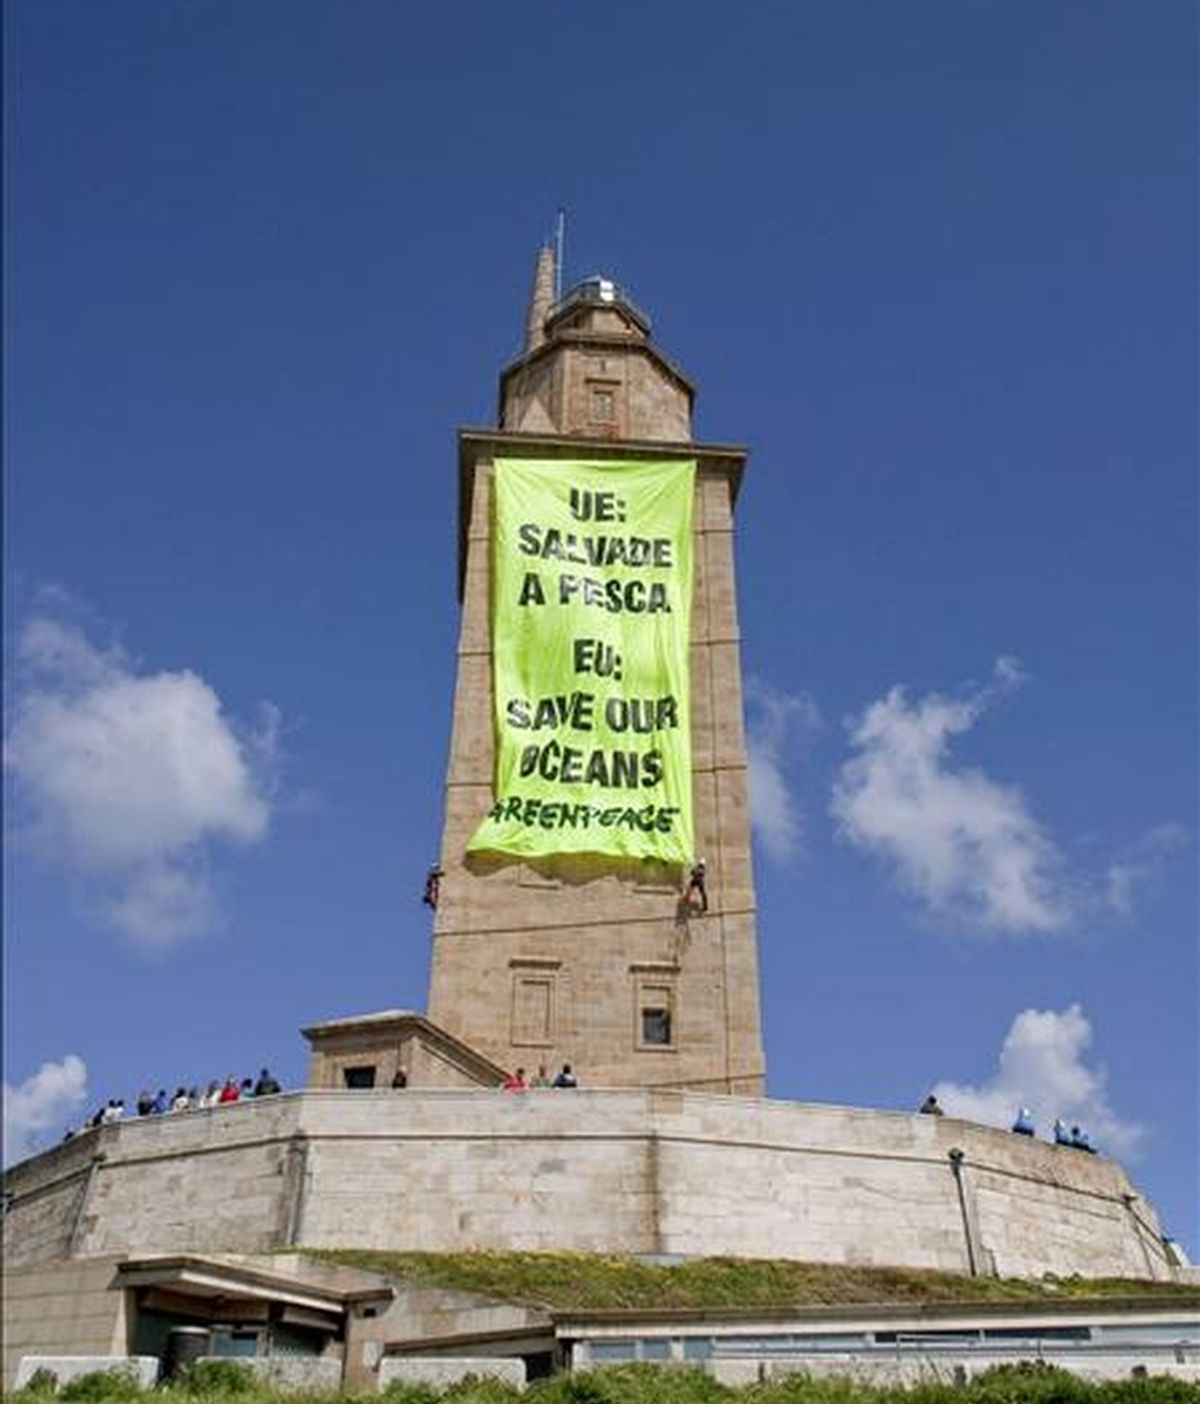 Miembros de la organización ecologista Greenpeace han desplegado esta mañana en la Torre de Hércules de A Coruña, monumento romano declarado recientemente Patrimonio de la Humanidad, una pancarta de unos 200 metros cuadrados donde se podía leer el mensaje "UE: Salvad la pesca". EFE